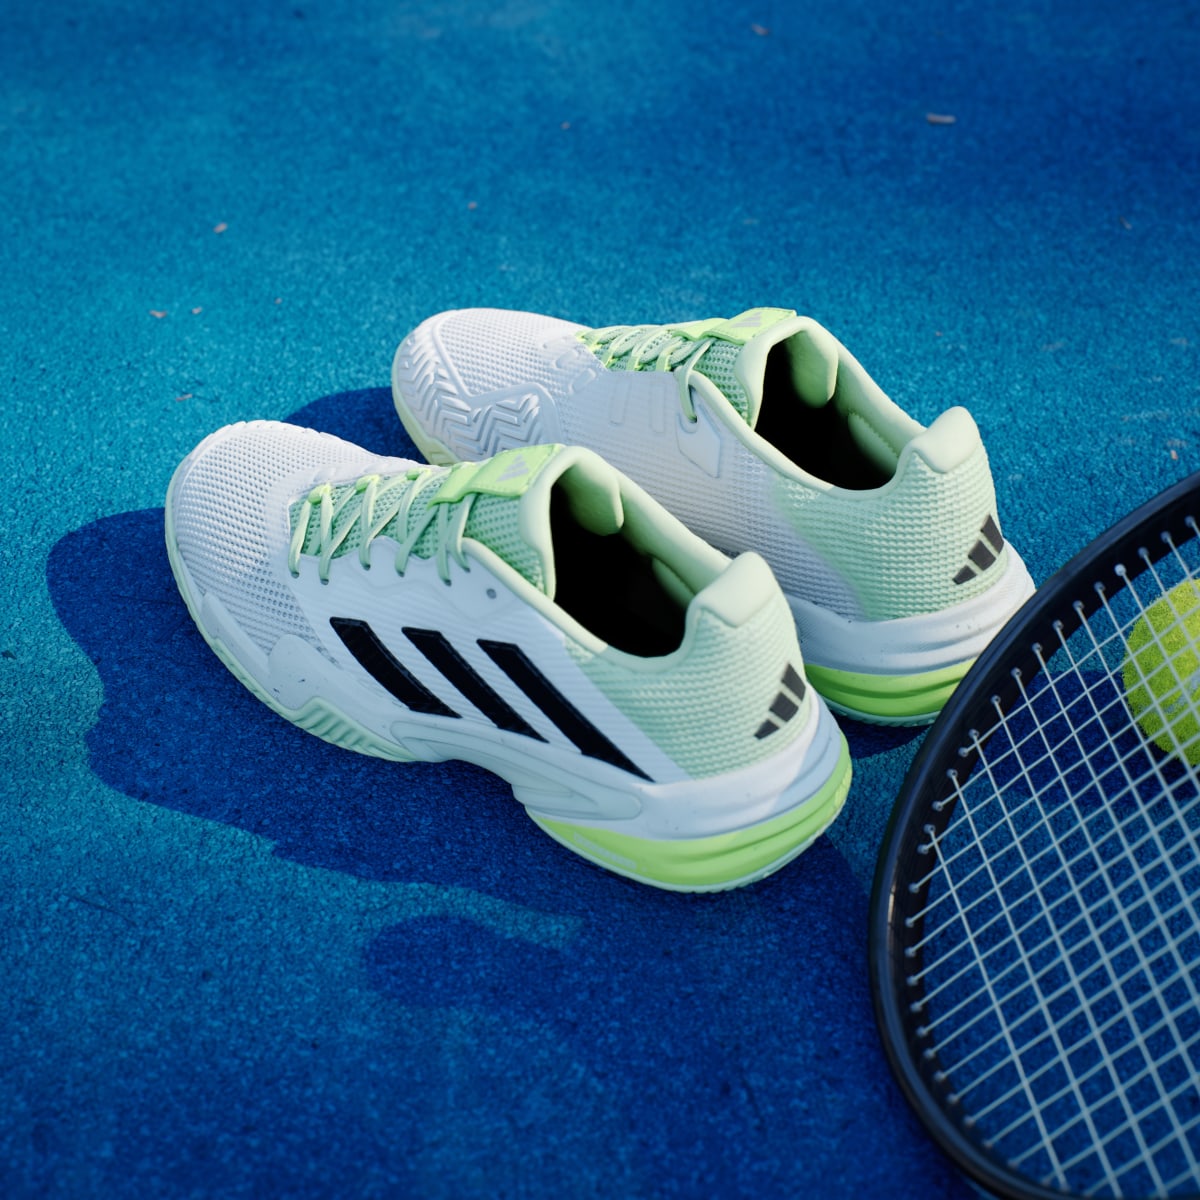 Adidas Barricade 13 Tenis Ayakkabısı. 6